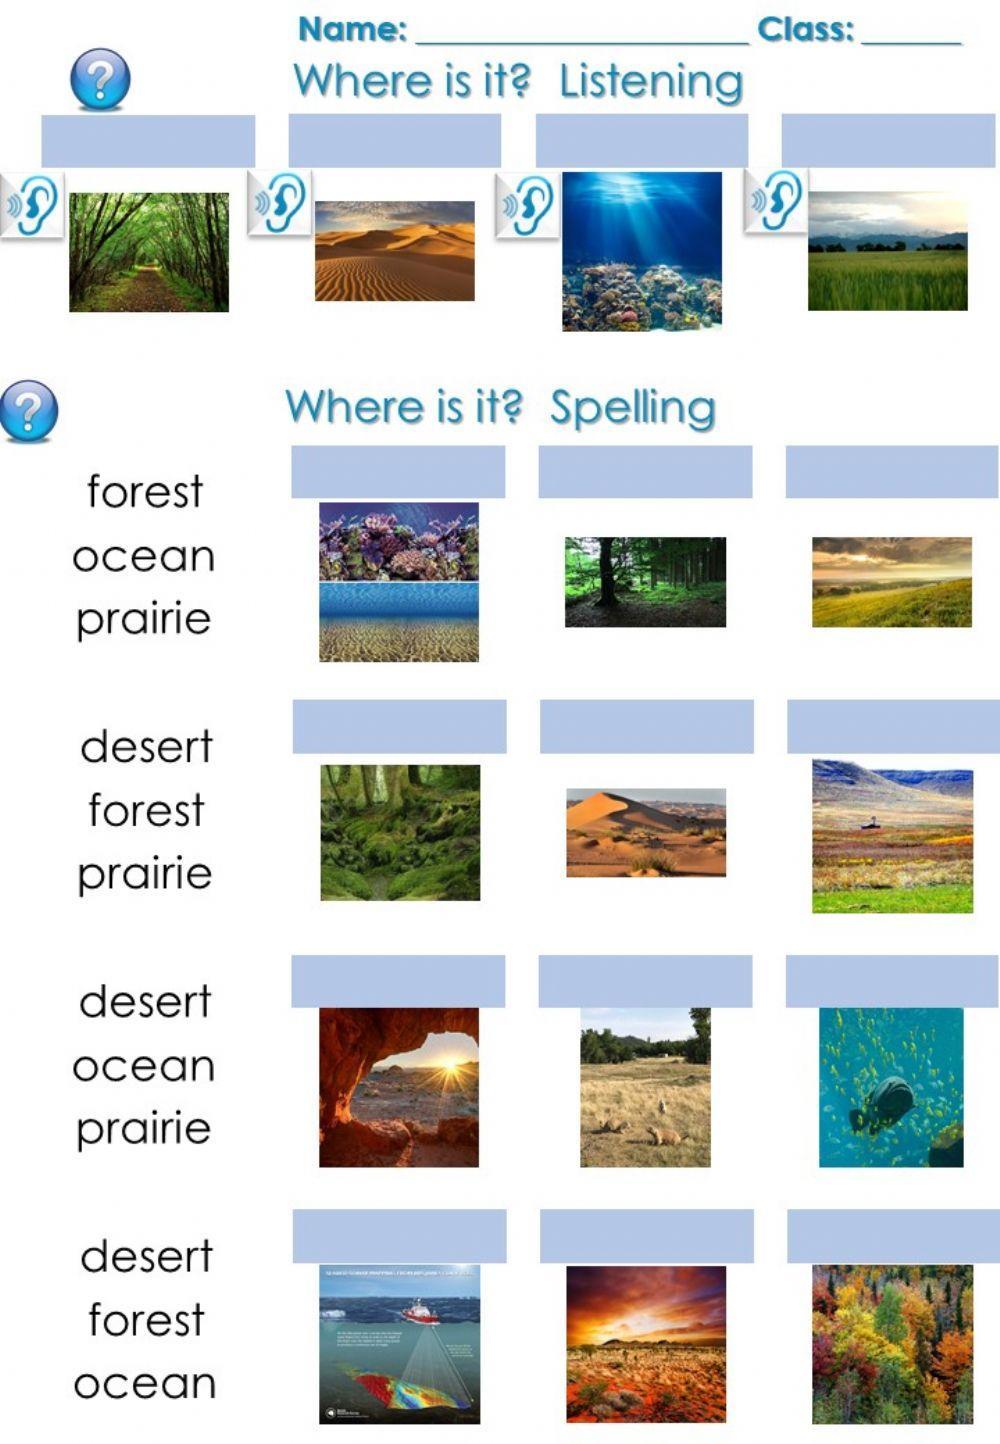 Forest, desert, ocean, prairie spelling